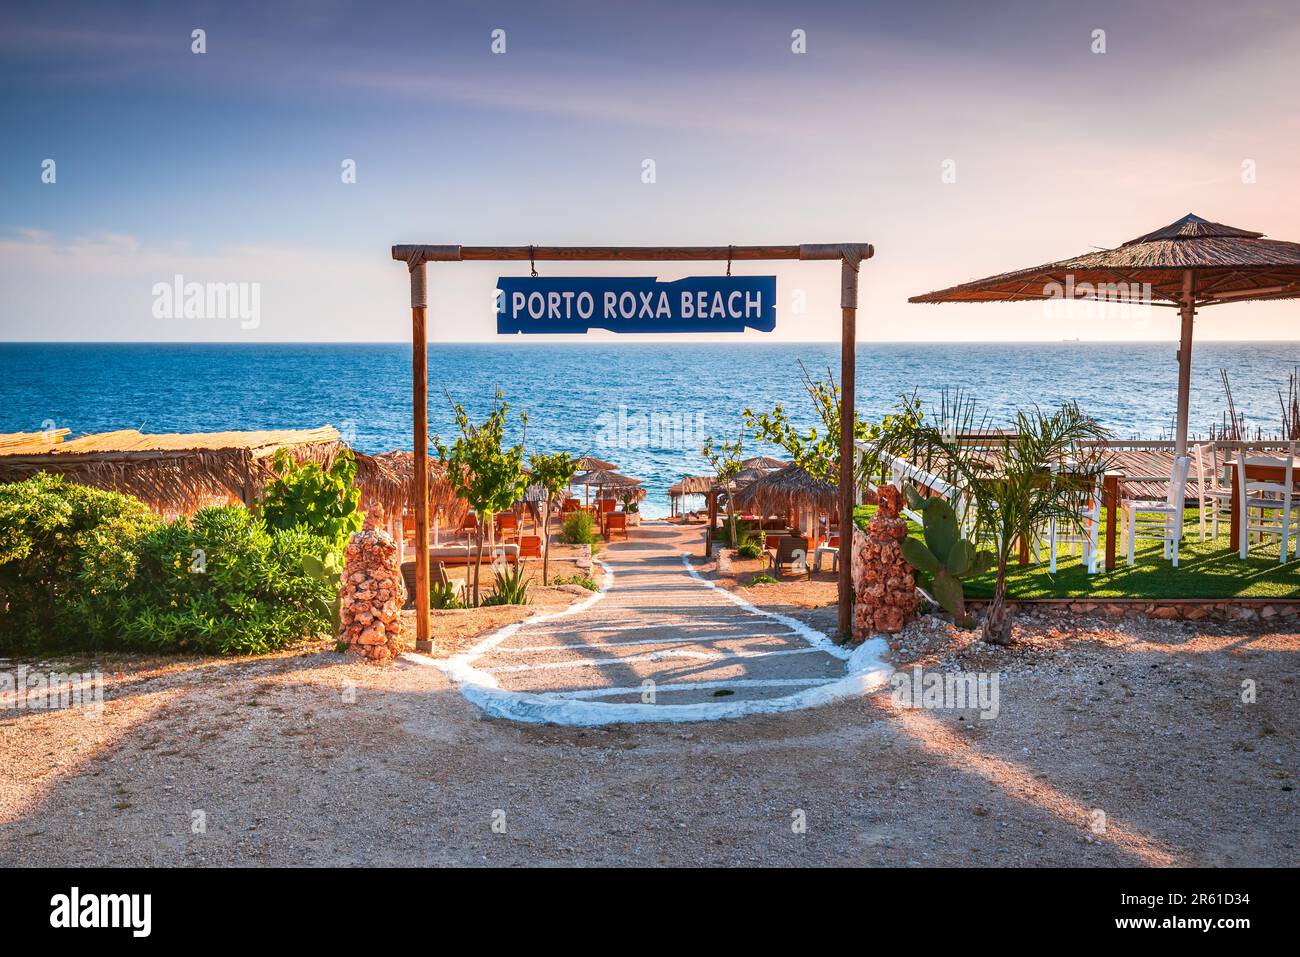 Zakynthos, Grèce. Pittoresque plage rocheuse de Porto Roxa située sur la côte ouest de Zante, dans les îles grecques. Banque D'Images